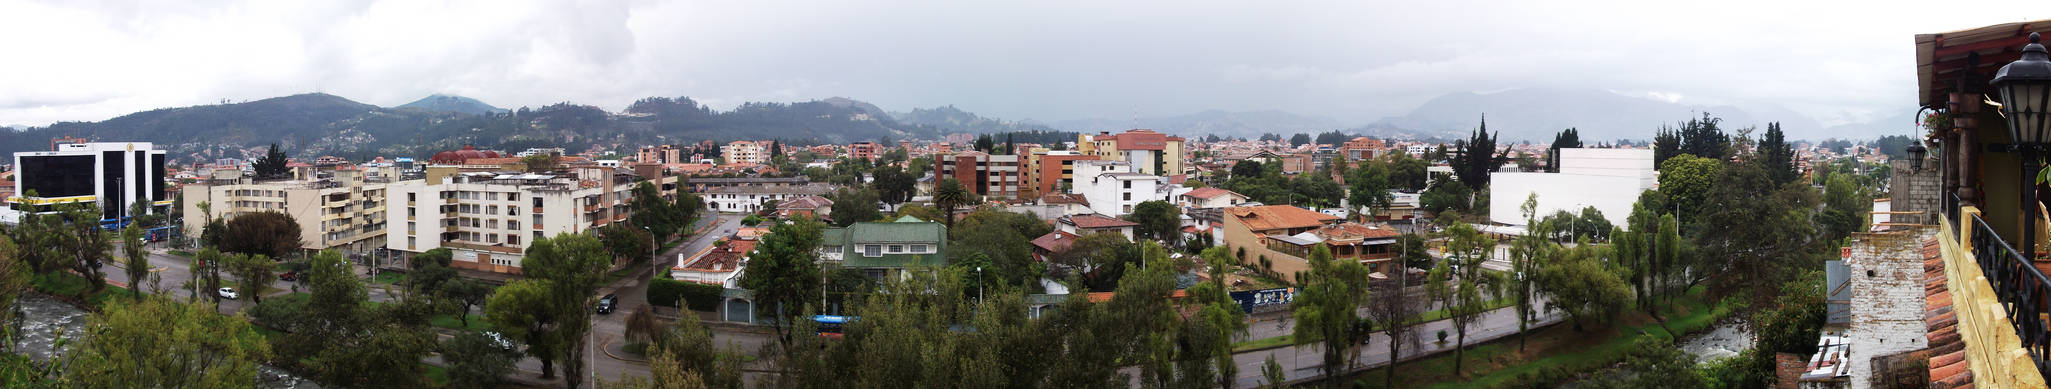 Cuenca Panoramica 2011